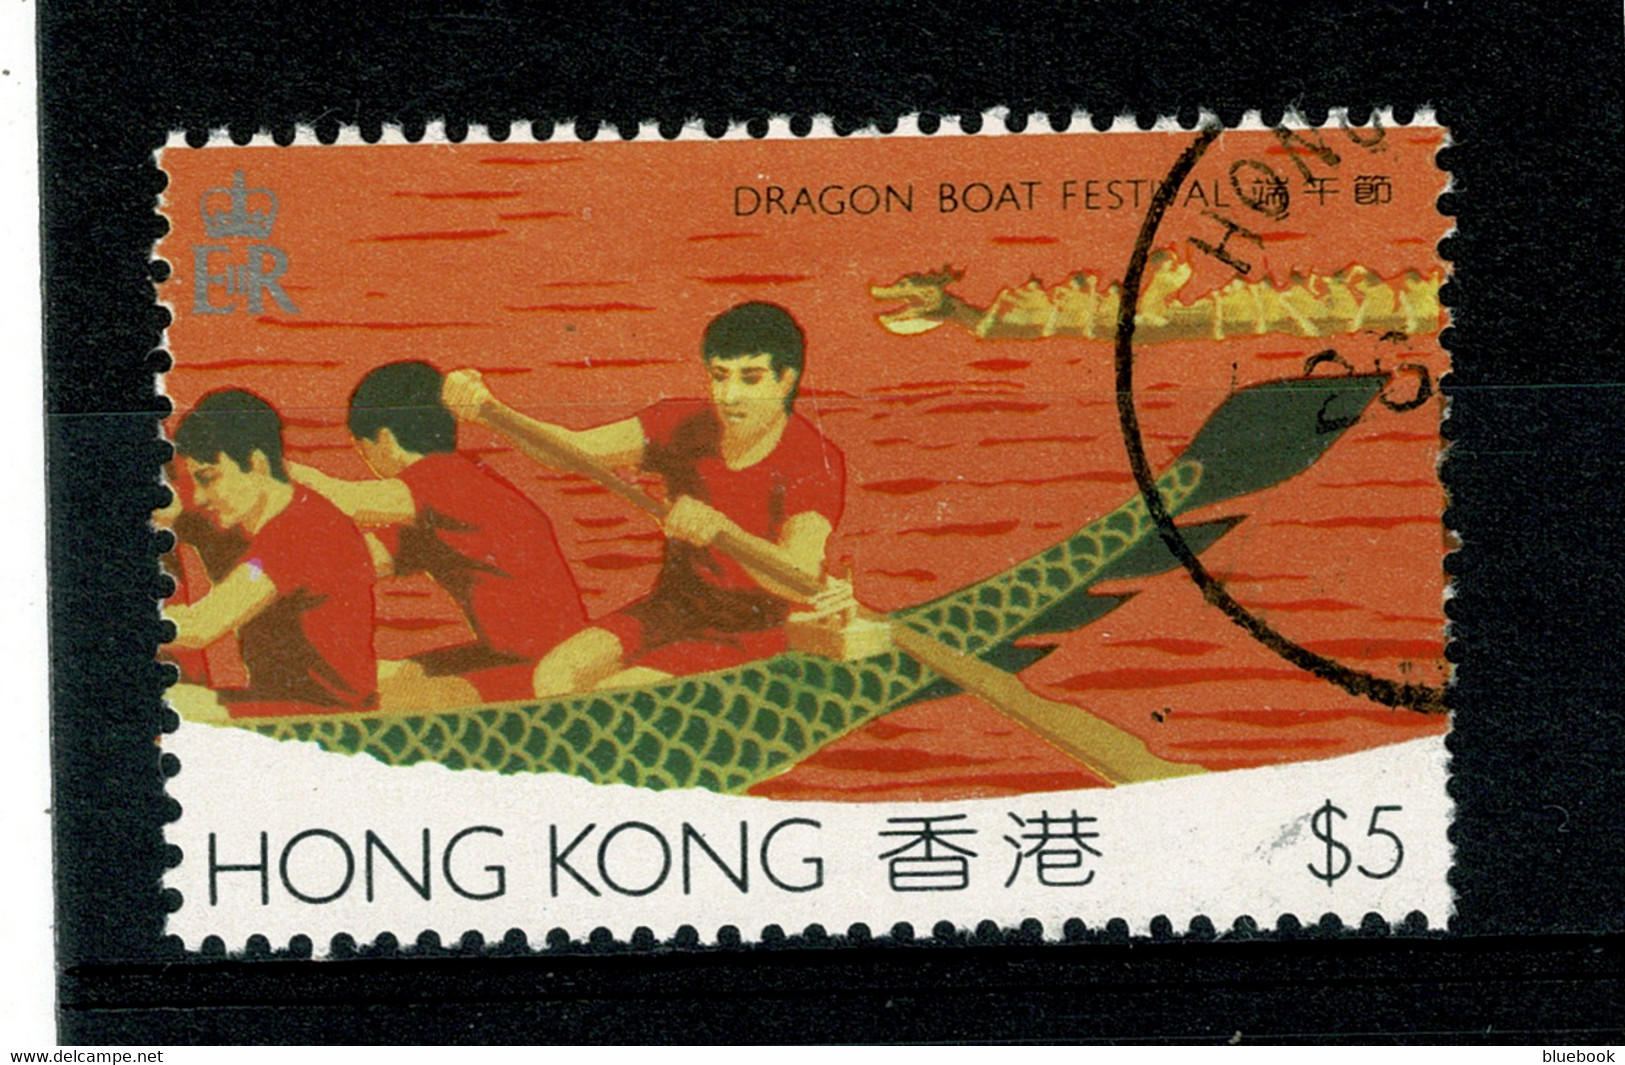 Ref 1401 -  1985 Hong Kong Dragon Boat Festival - $5 Fine Used Stamp SG 491 - Cat £11 + - Oblitérés